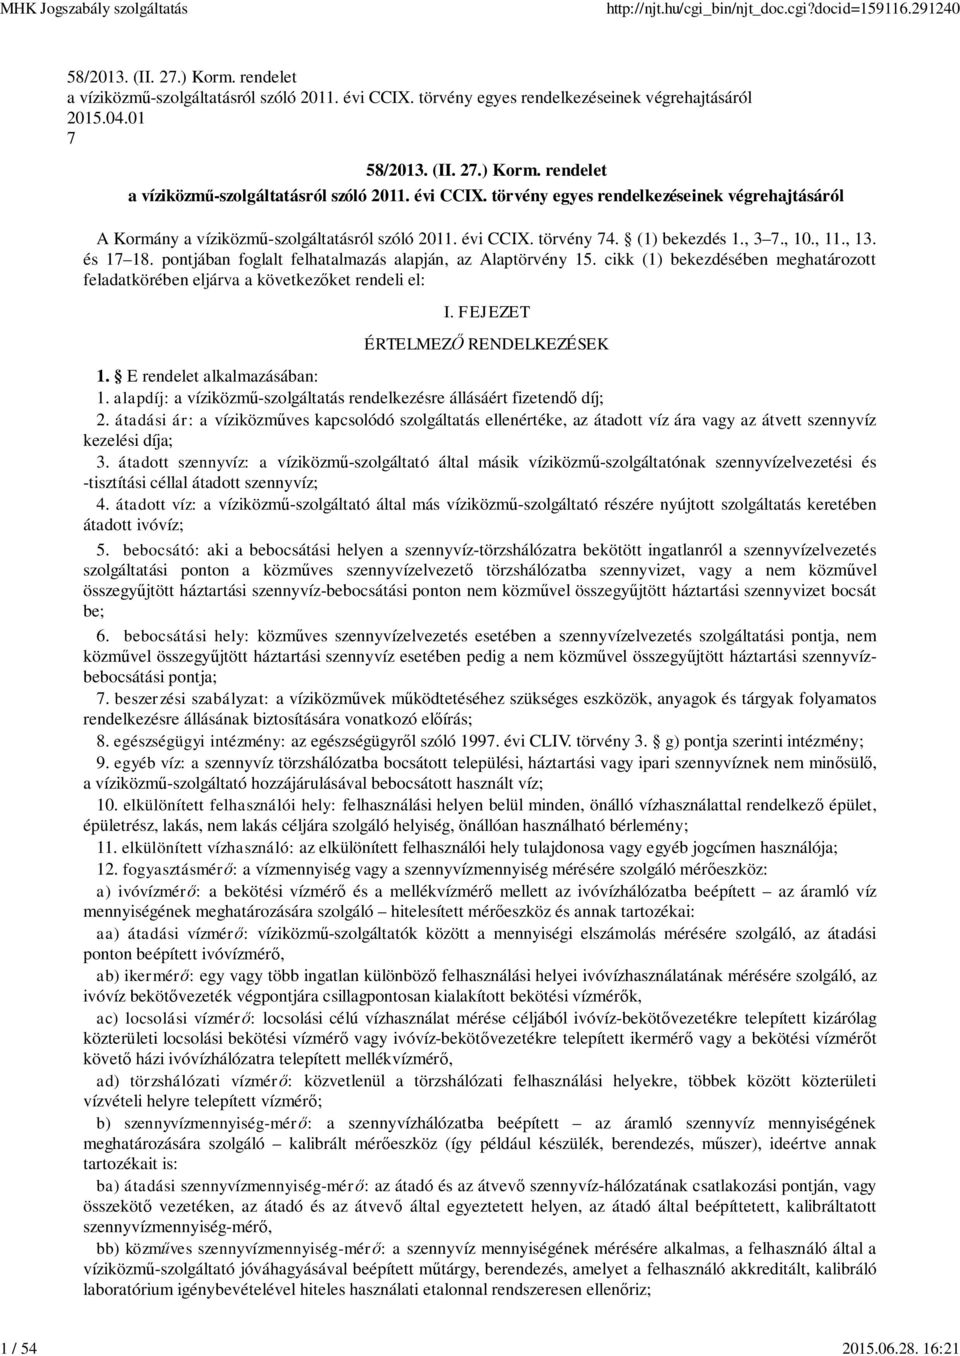 törvény egyes rendelkezéseinek végrehajtásáról A Kormány a víziközm -szolgáltatásról szóló 2011. évi CCIX. törvény 74. (1) bekezdés 1., 3 7., 10., 11., 13. és 17 18.